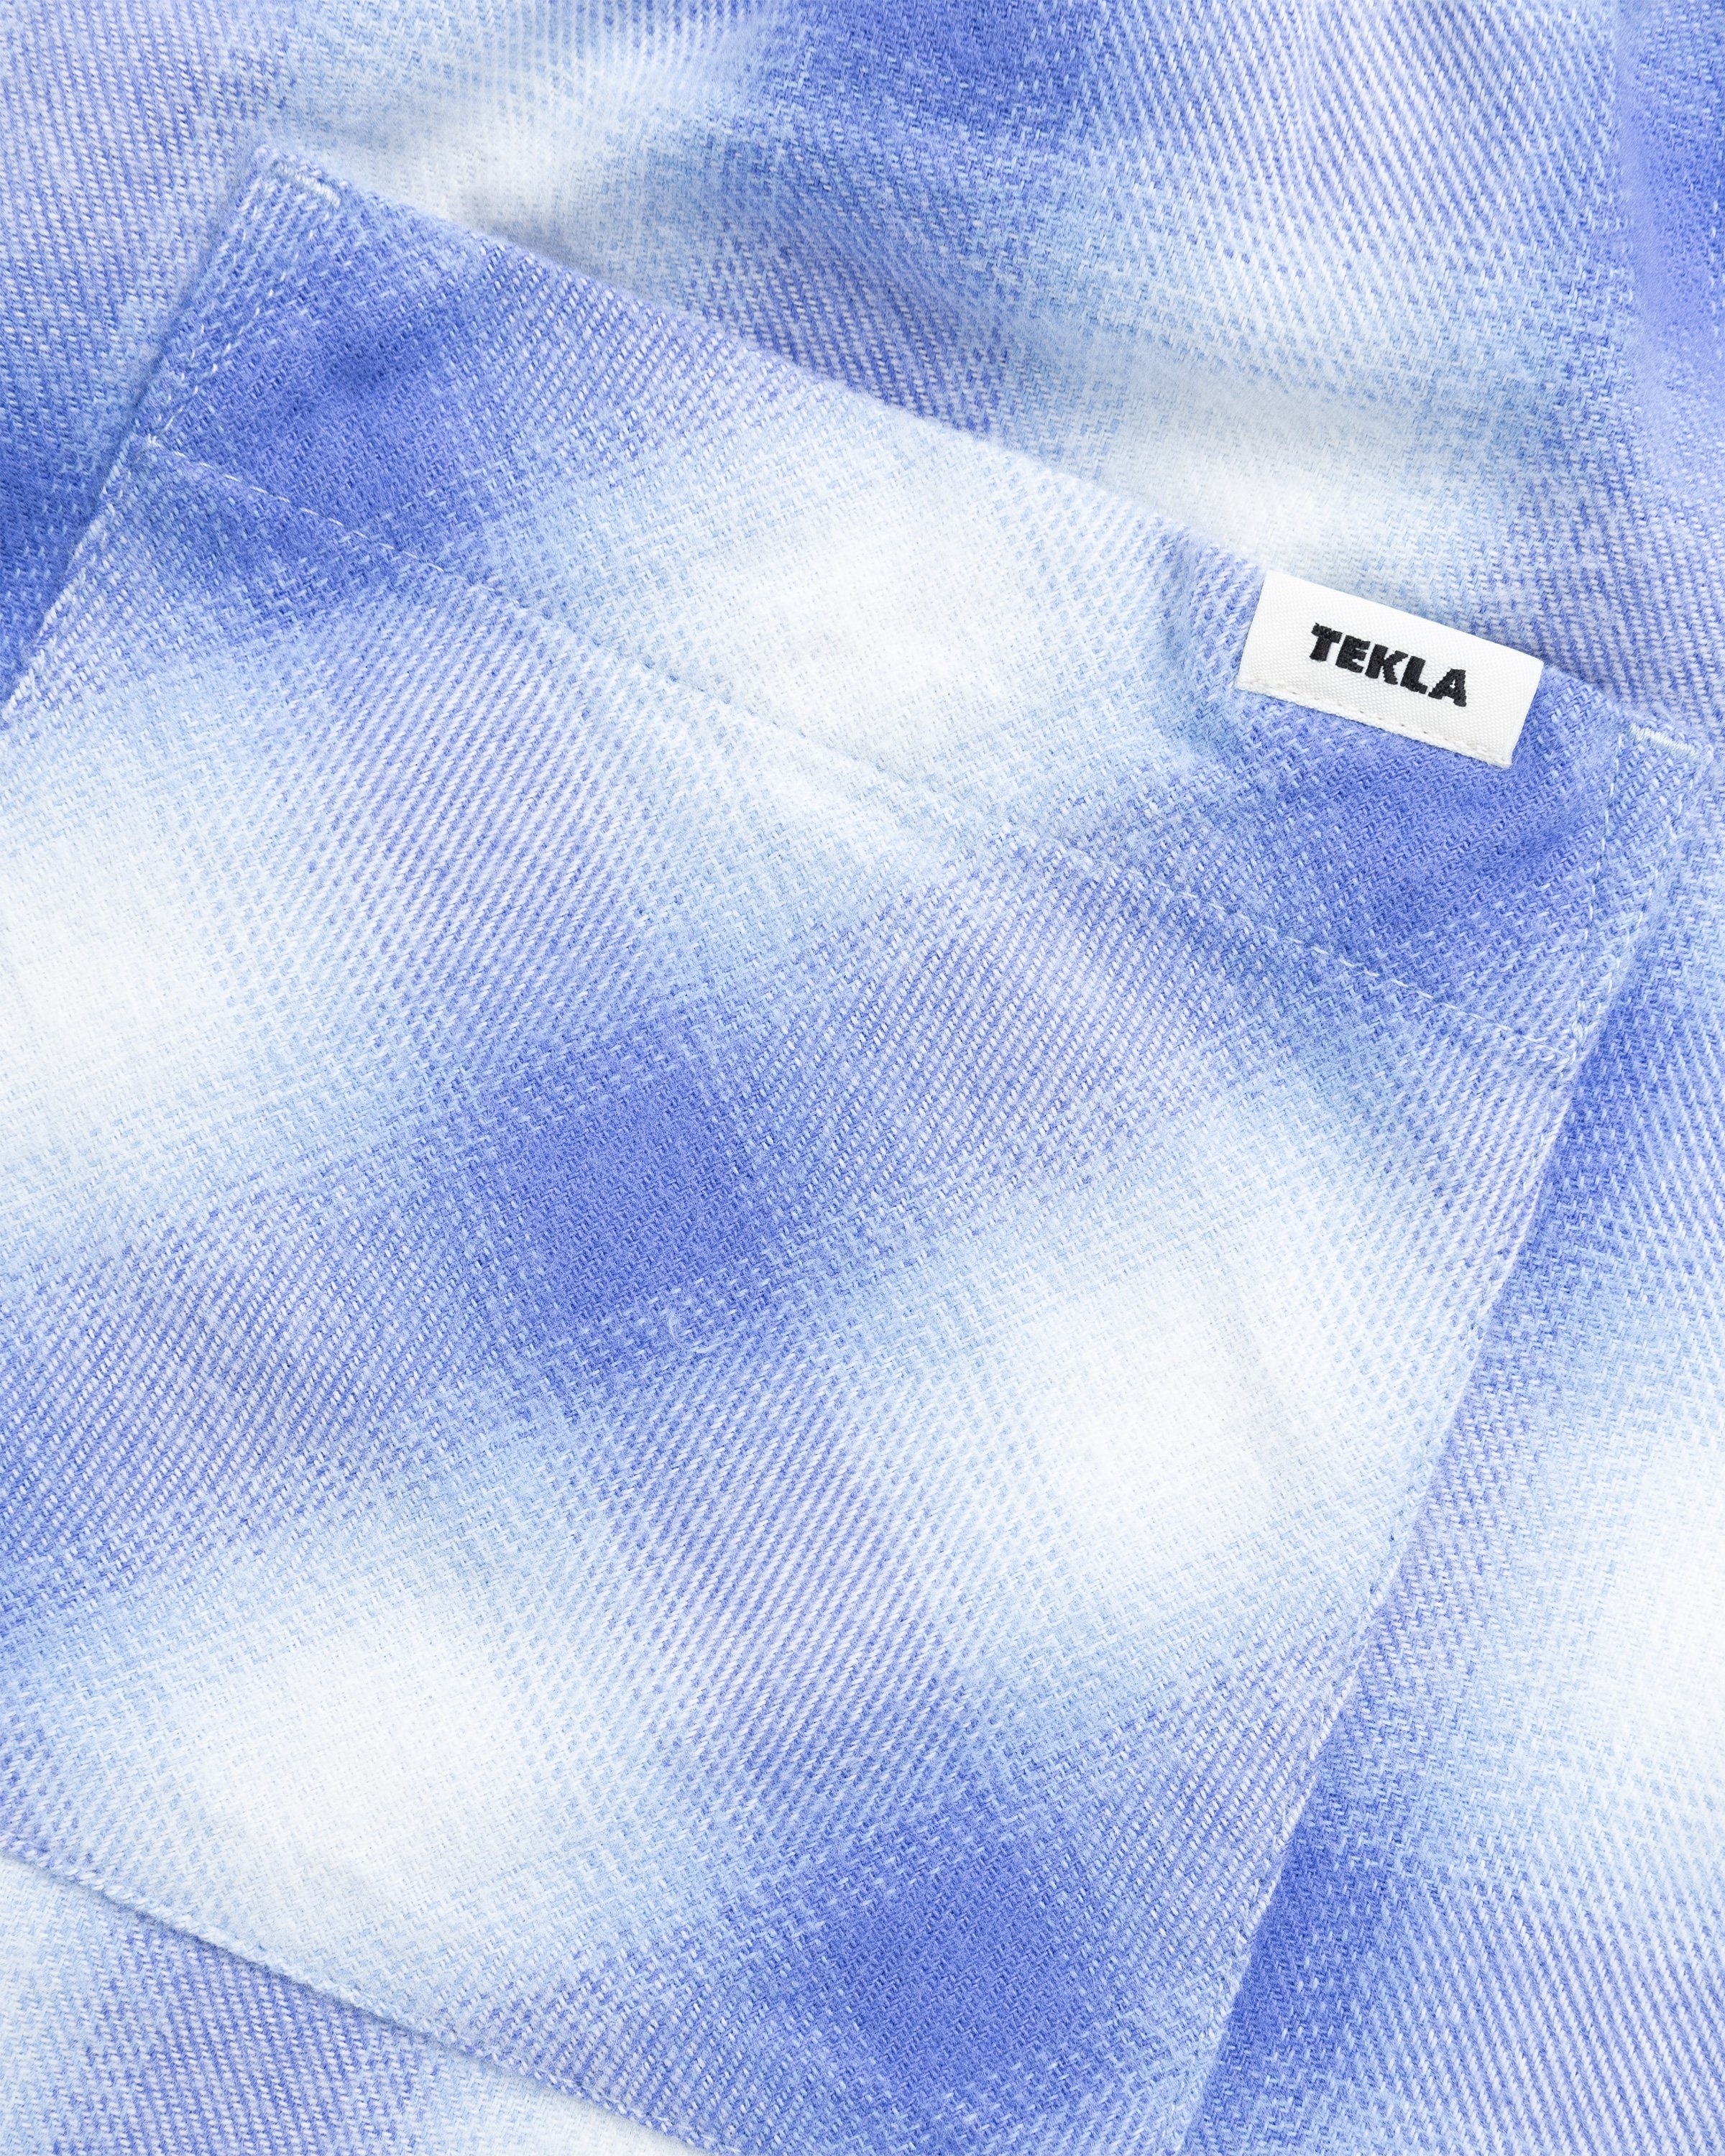 Tekla – Flannel Pyjamas Pants Light Blue Plaid